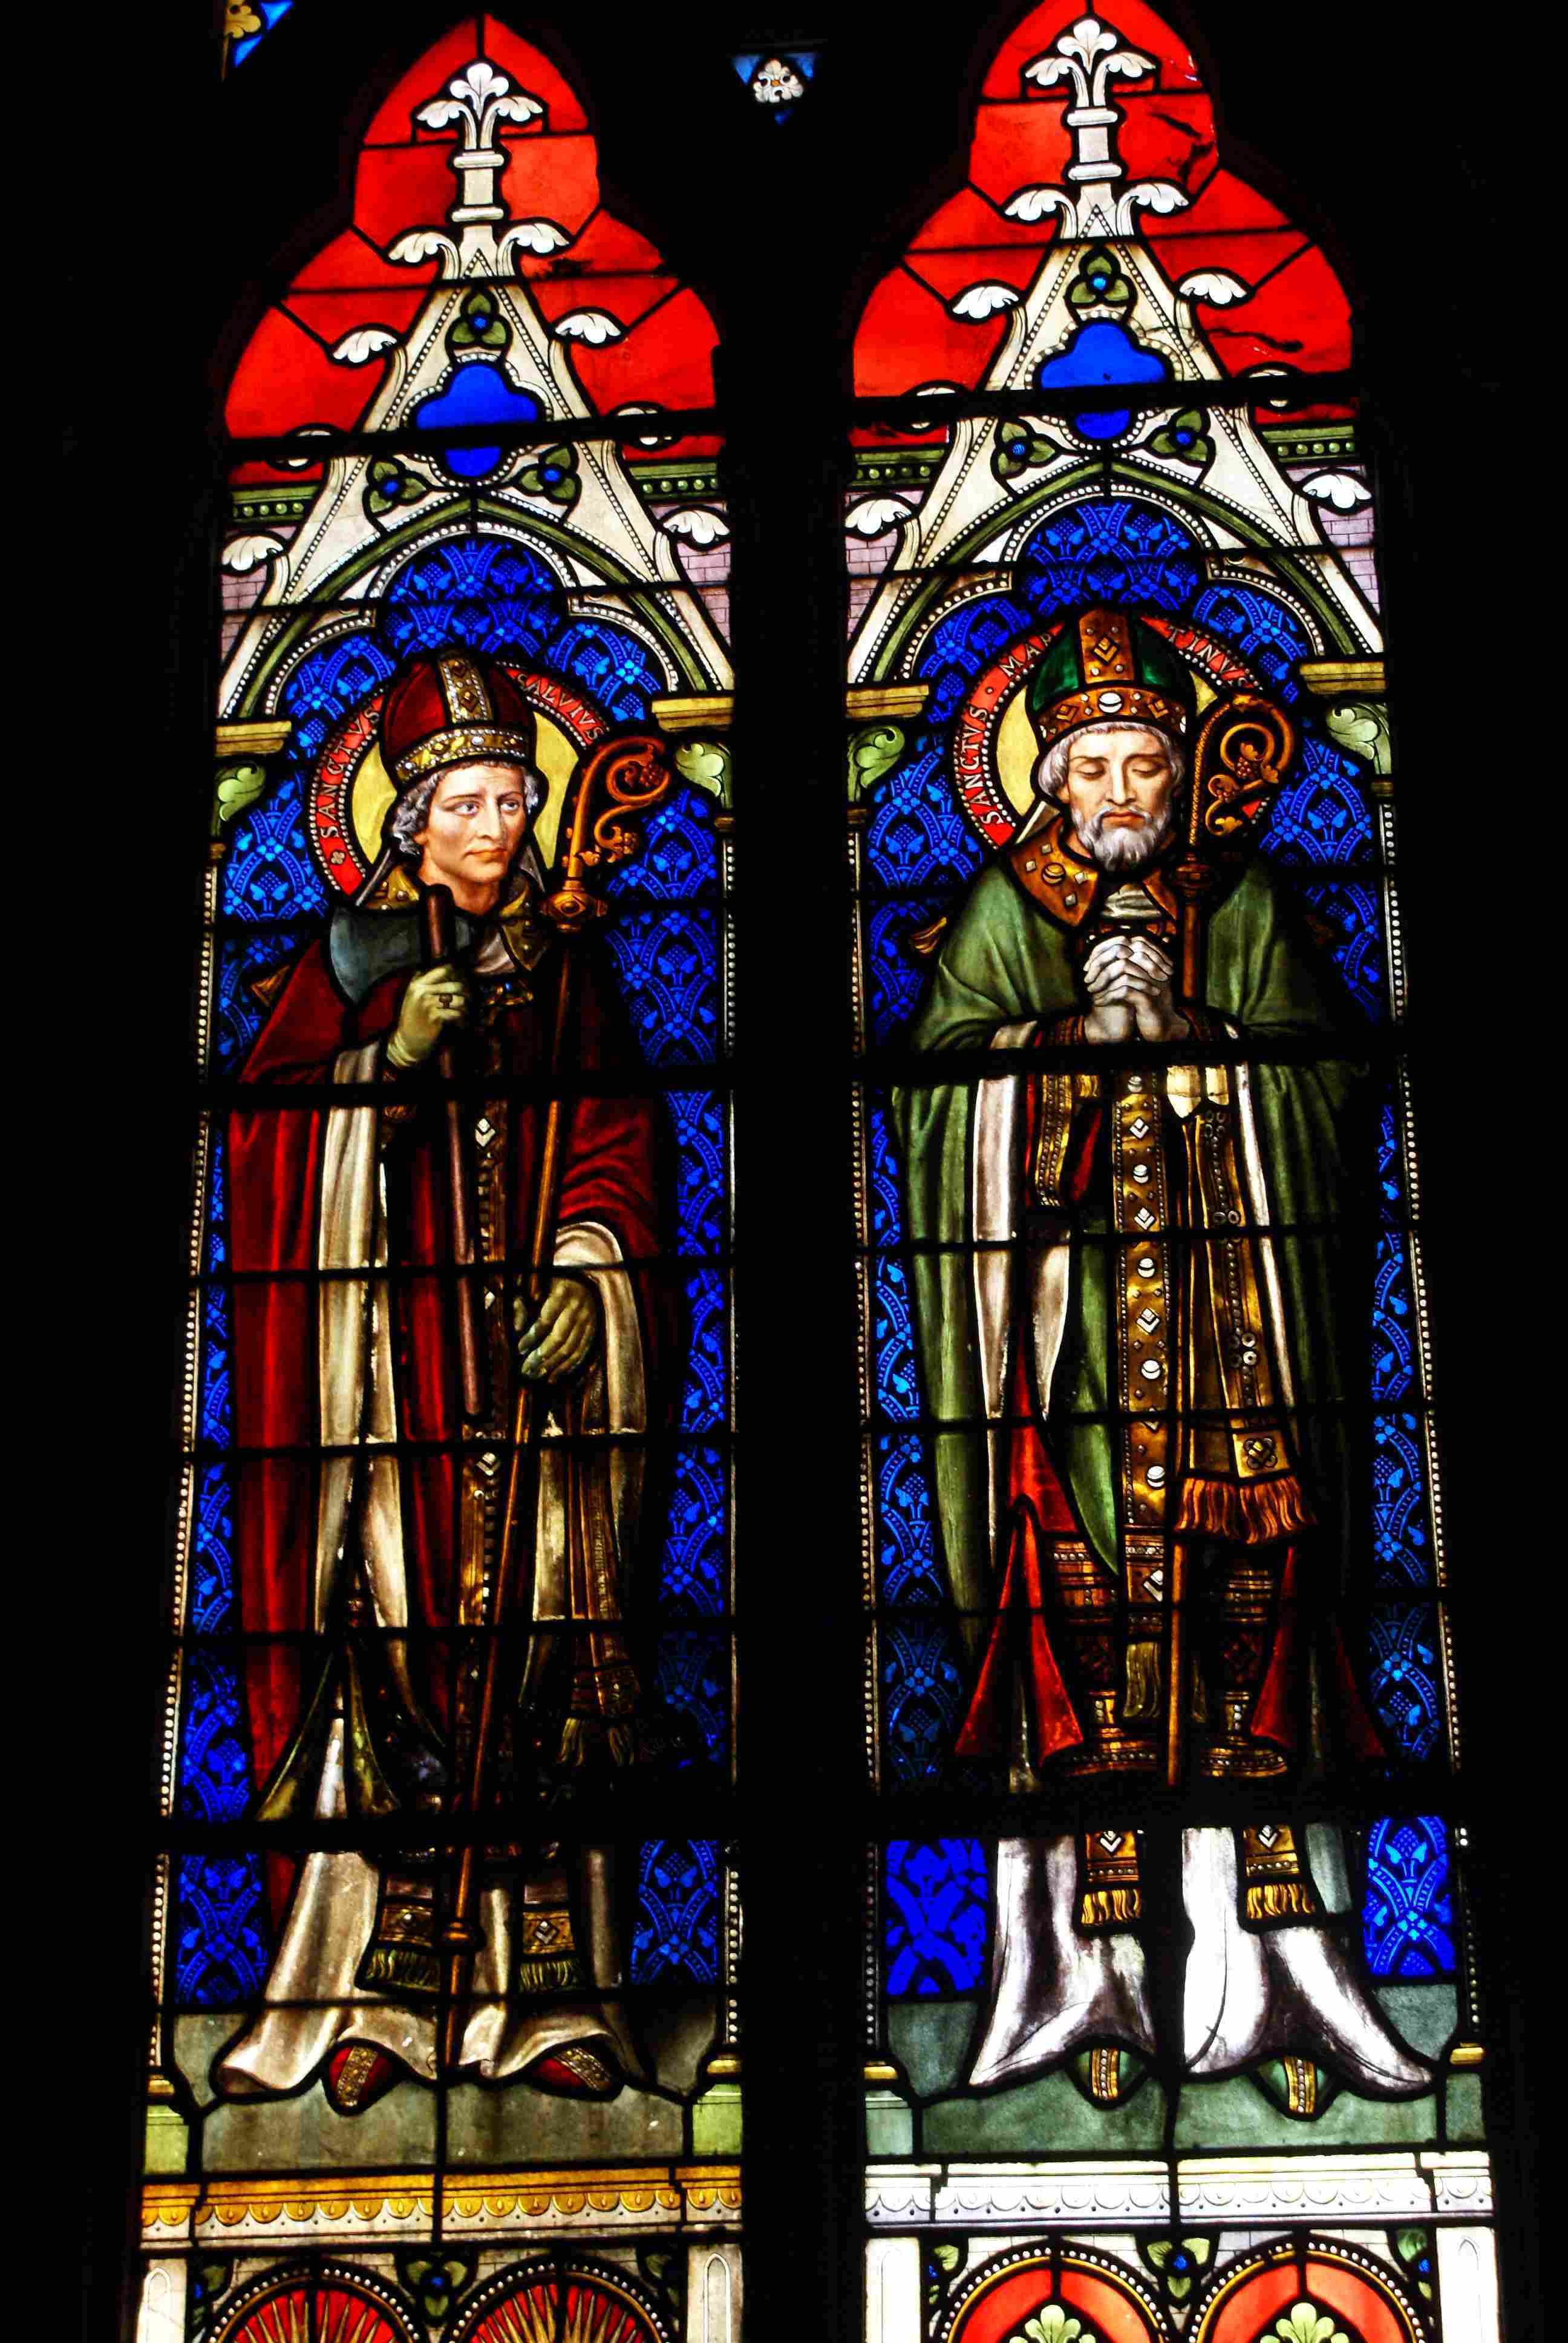 les 2 saints
Verrière de droite